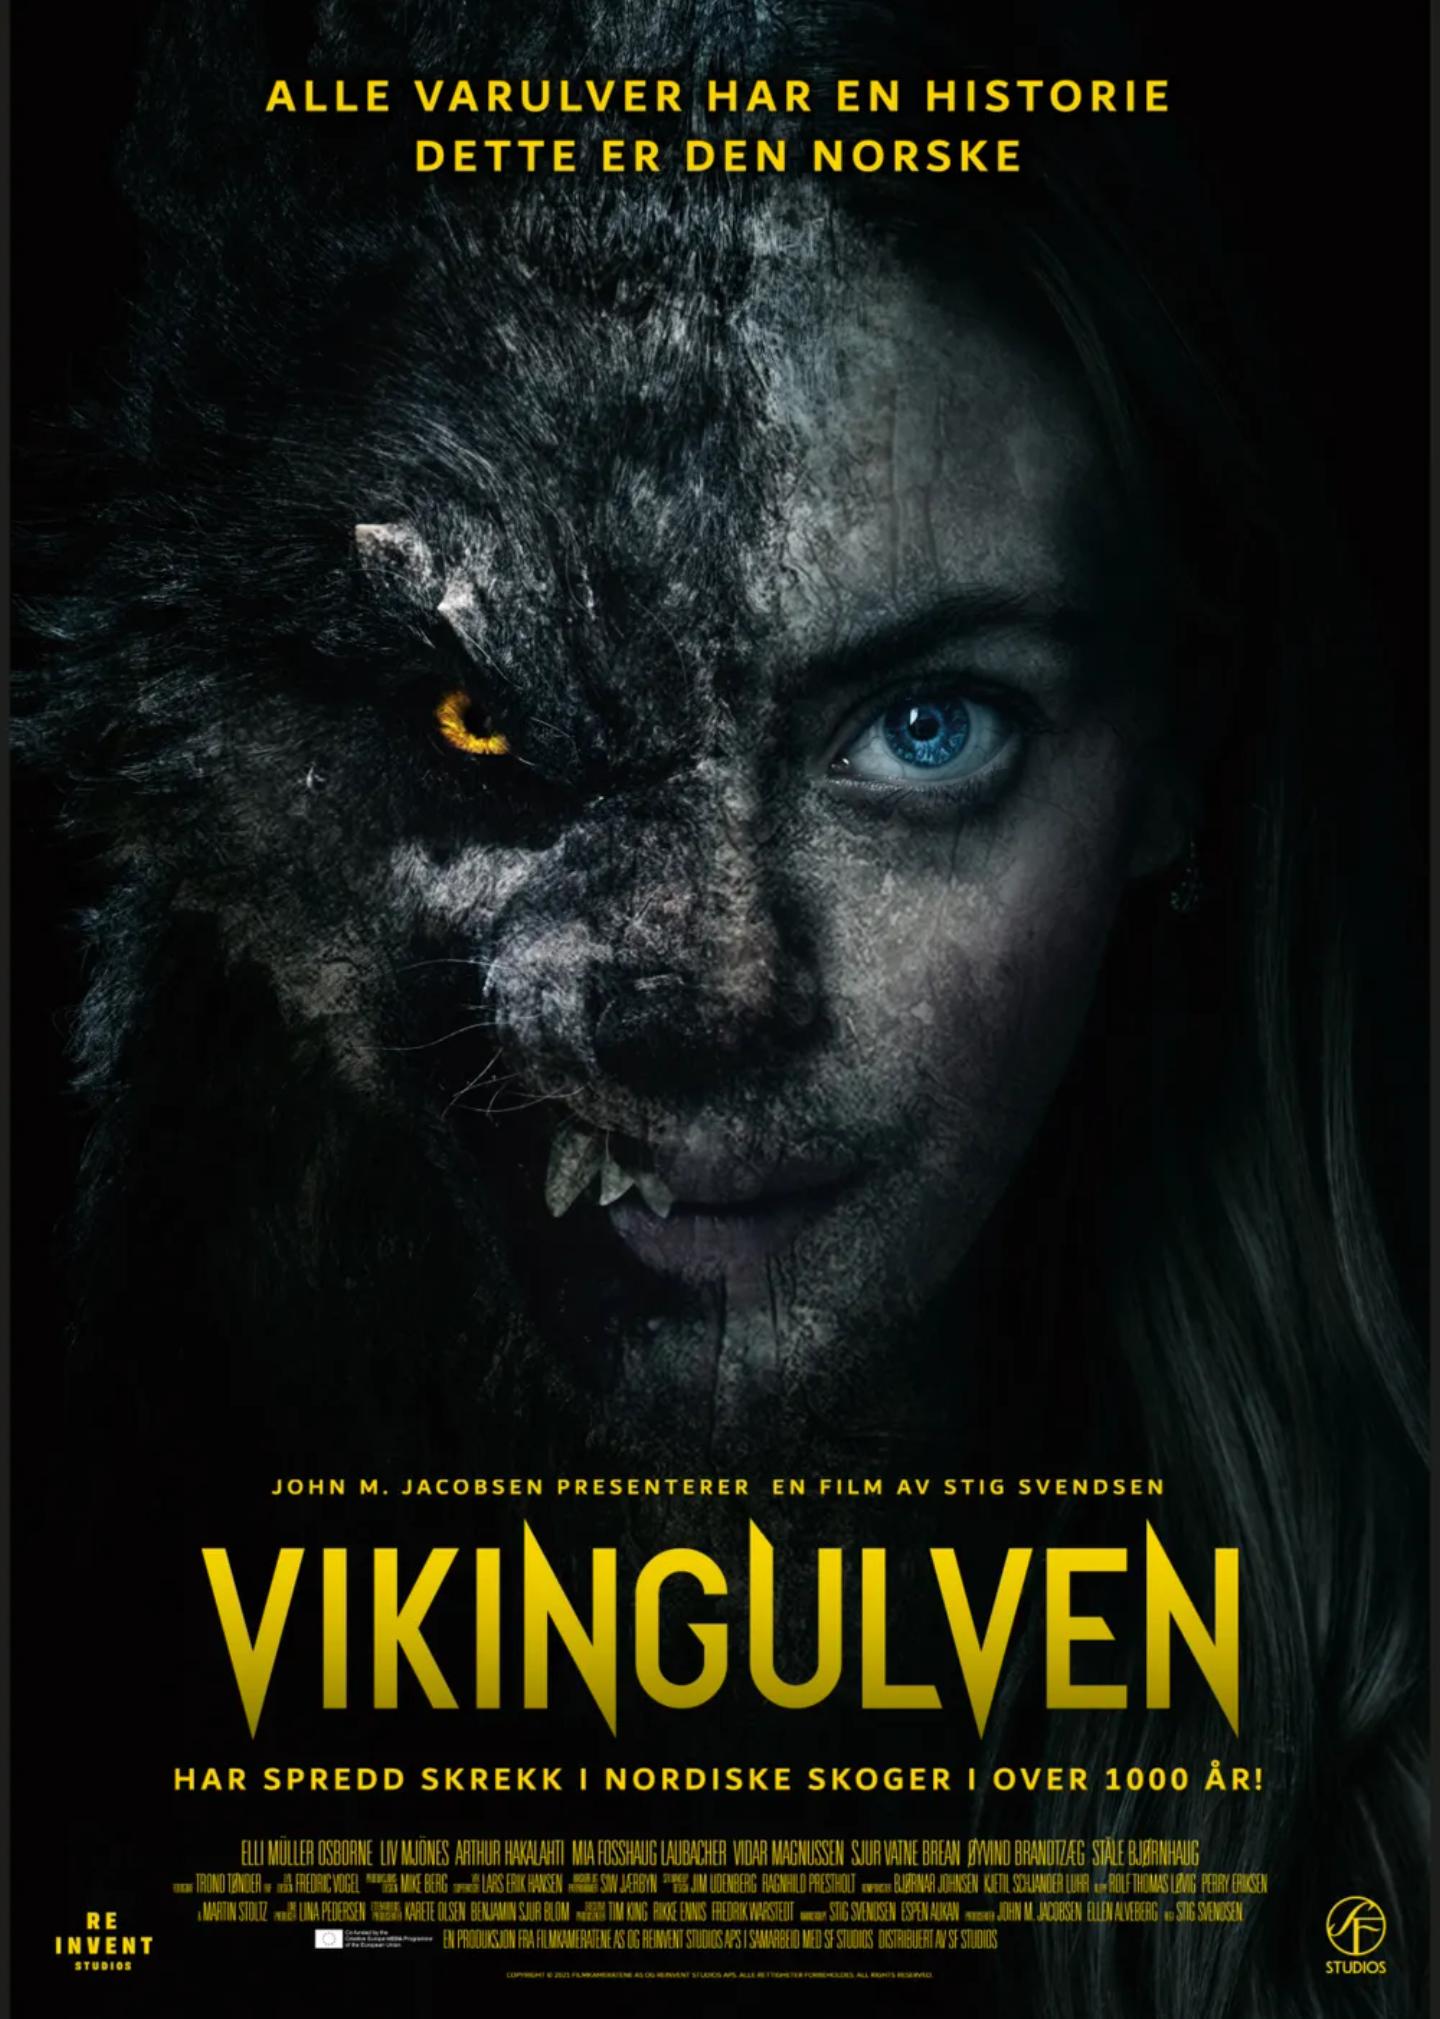 Plakat for 'Vikingulven'